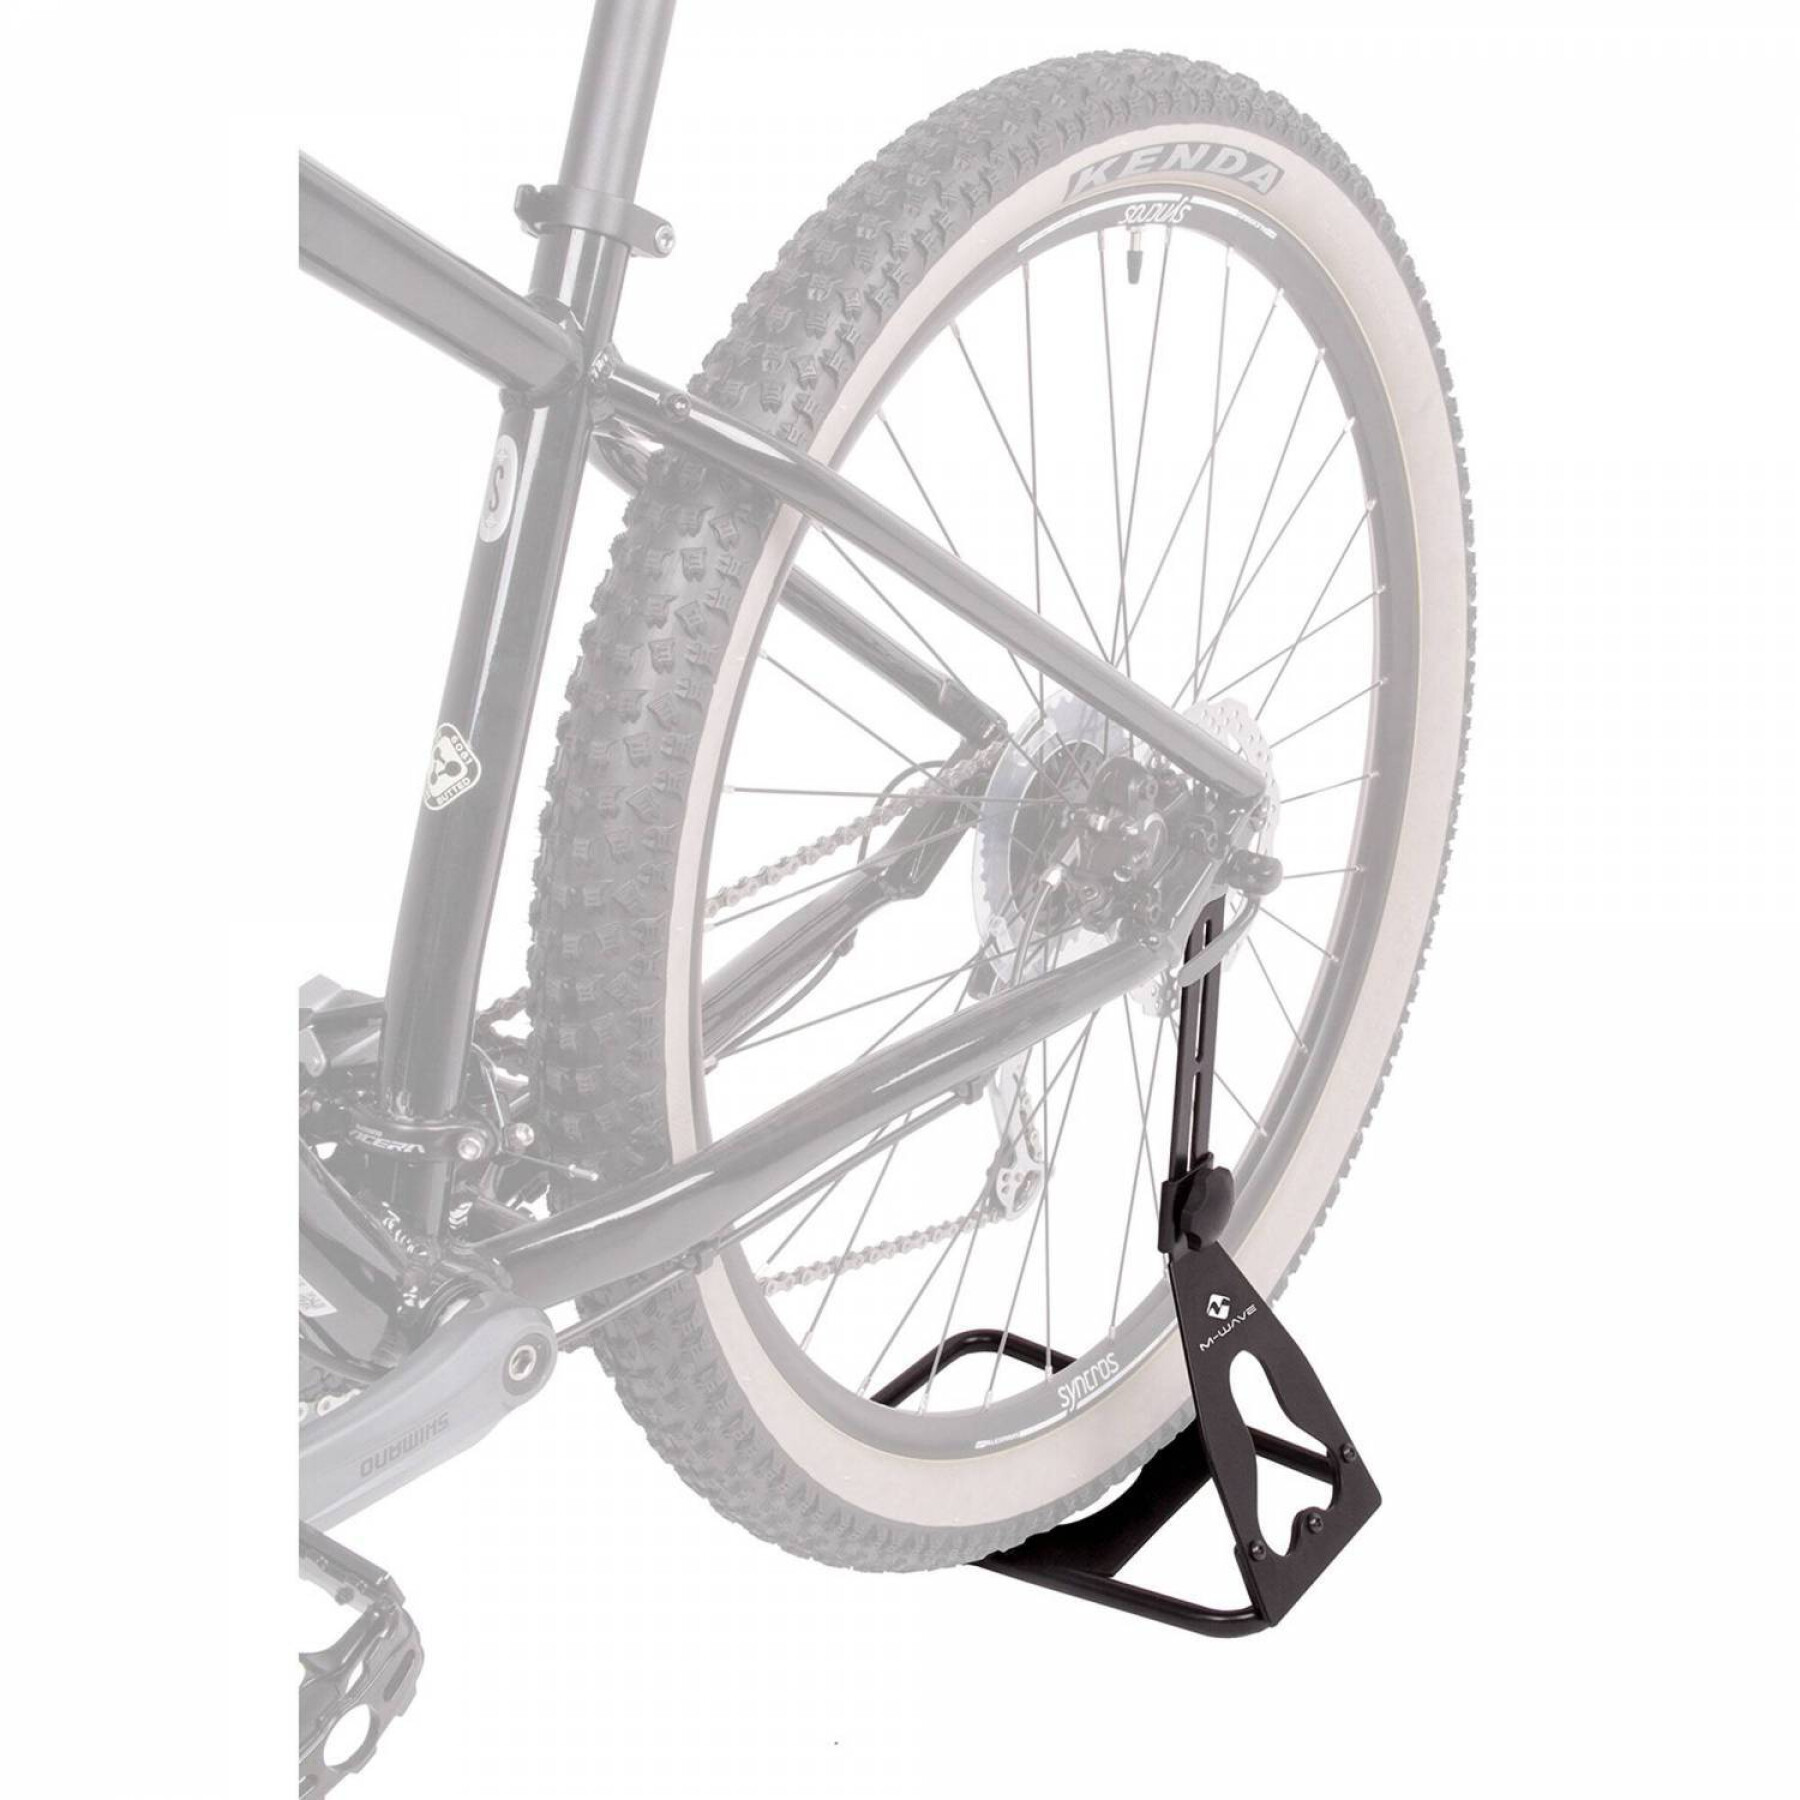 Porte-vélo à roue arrière réglable avec adaptateur de hauteur M-Wave